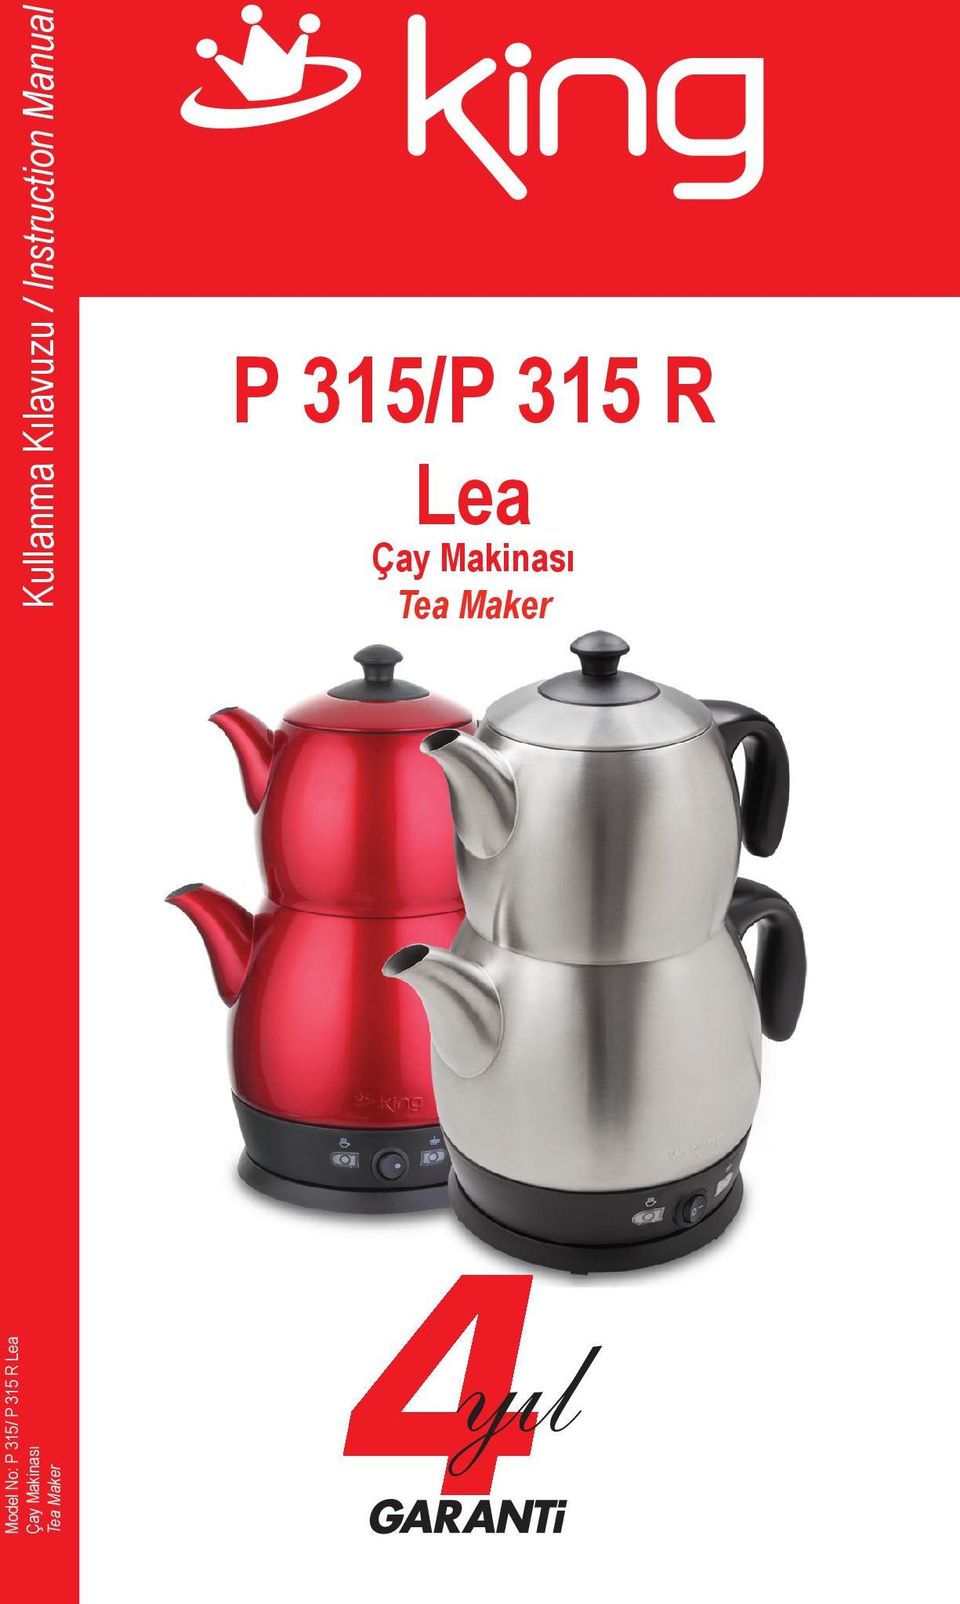 P 315/P 315 R Lea Çay Makinası Tea Maker - PDF Free Download